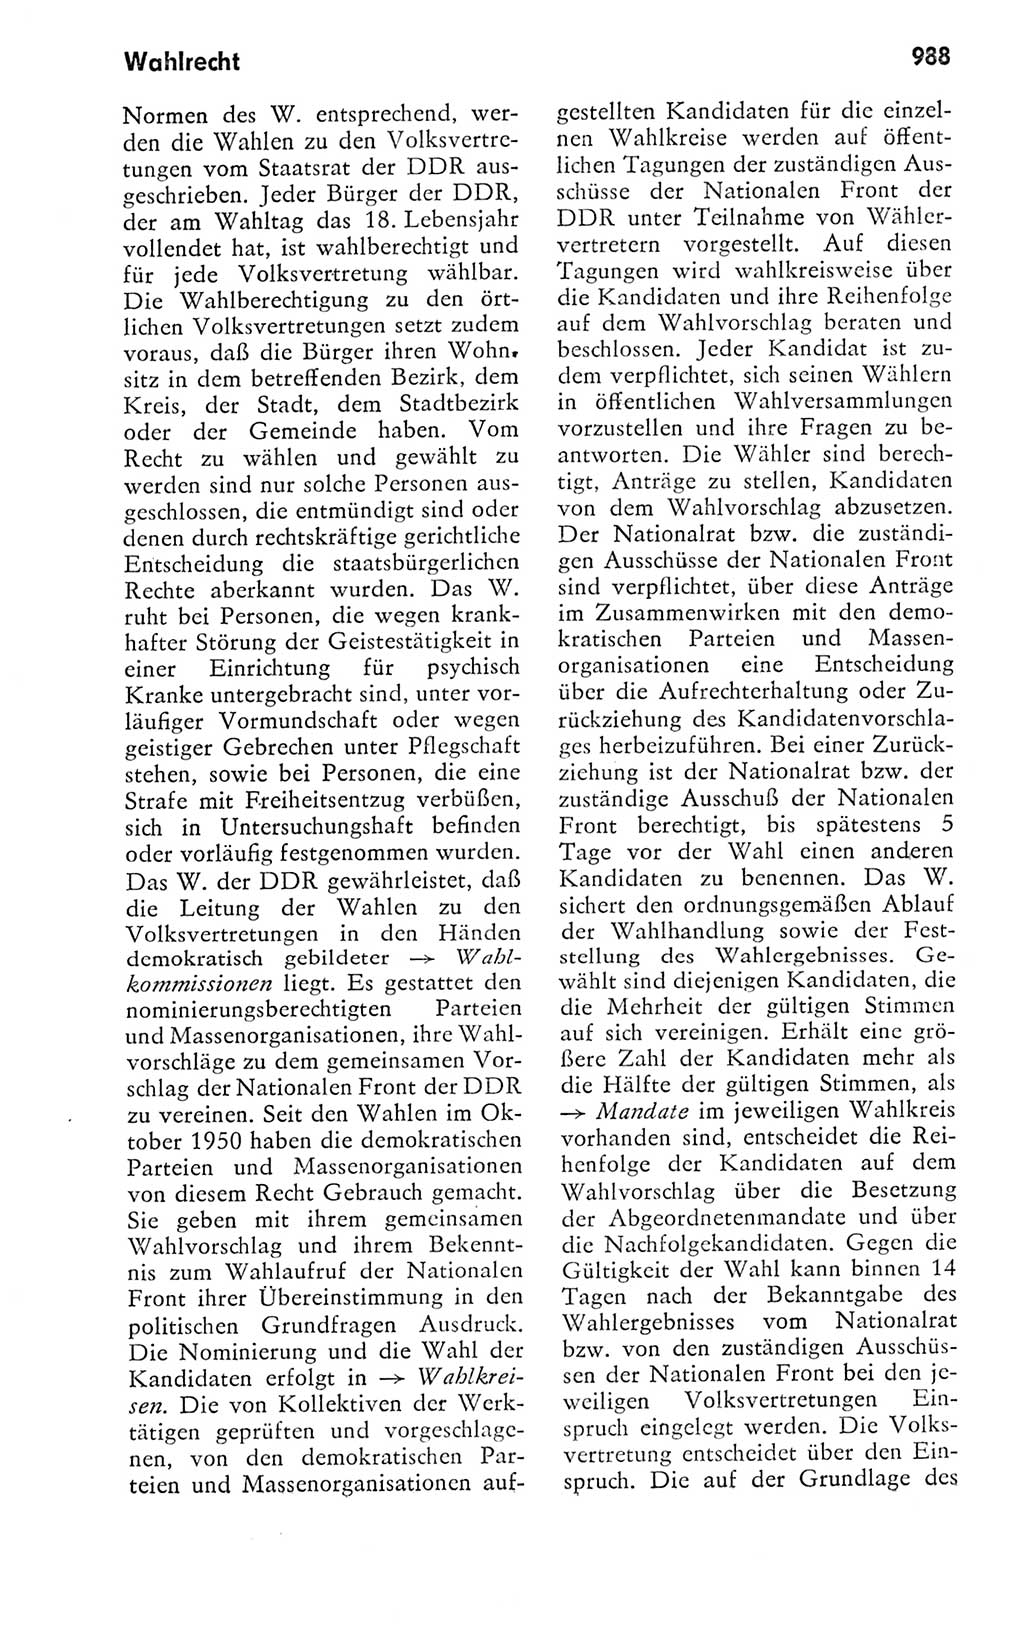 Kleines politisches Wörterbuch [Deutsche Demokratische Republik (DDR)] 1978, Seite 988 (Kl. pol. Wb. DDR 1978, S. 988)